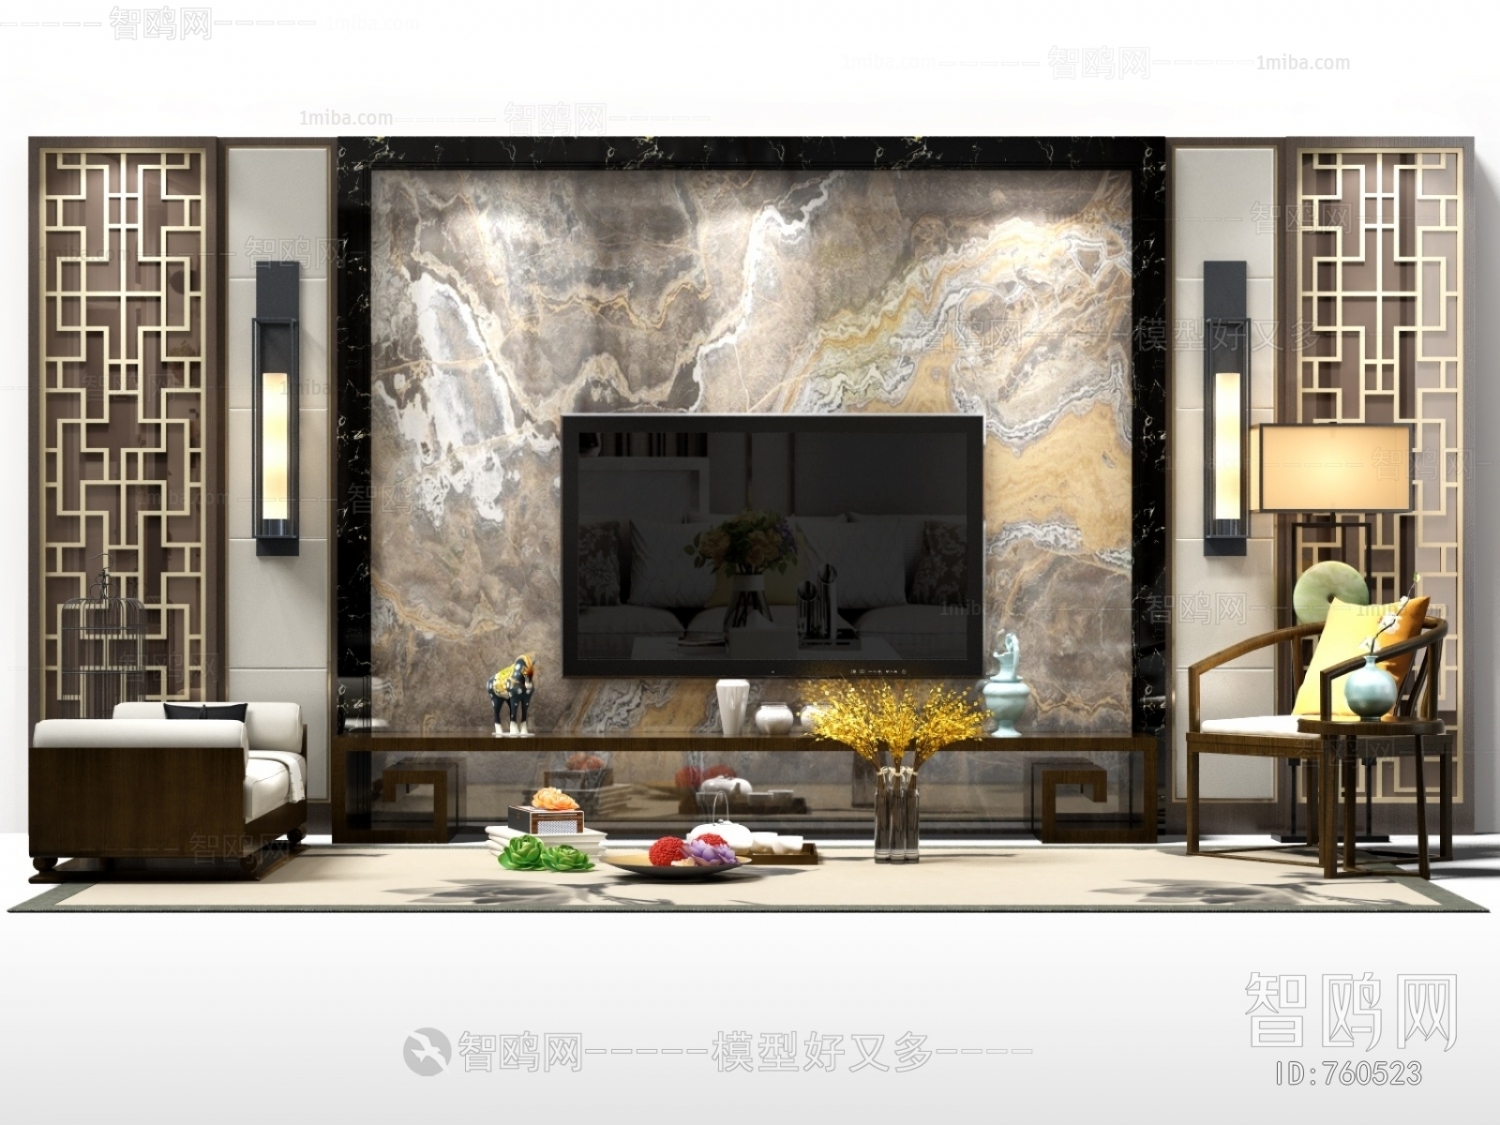 中式电视背景墙